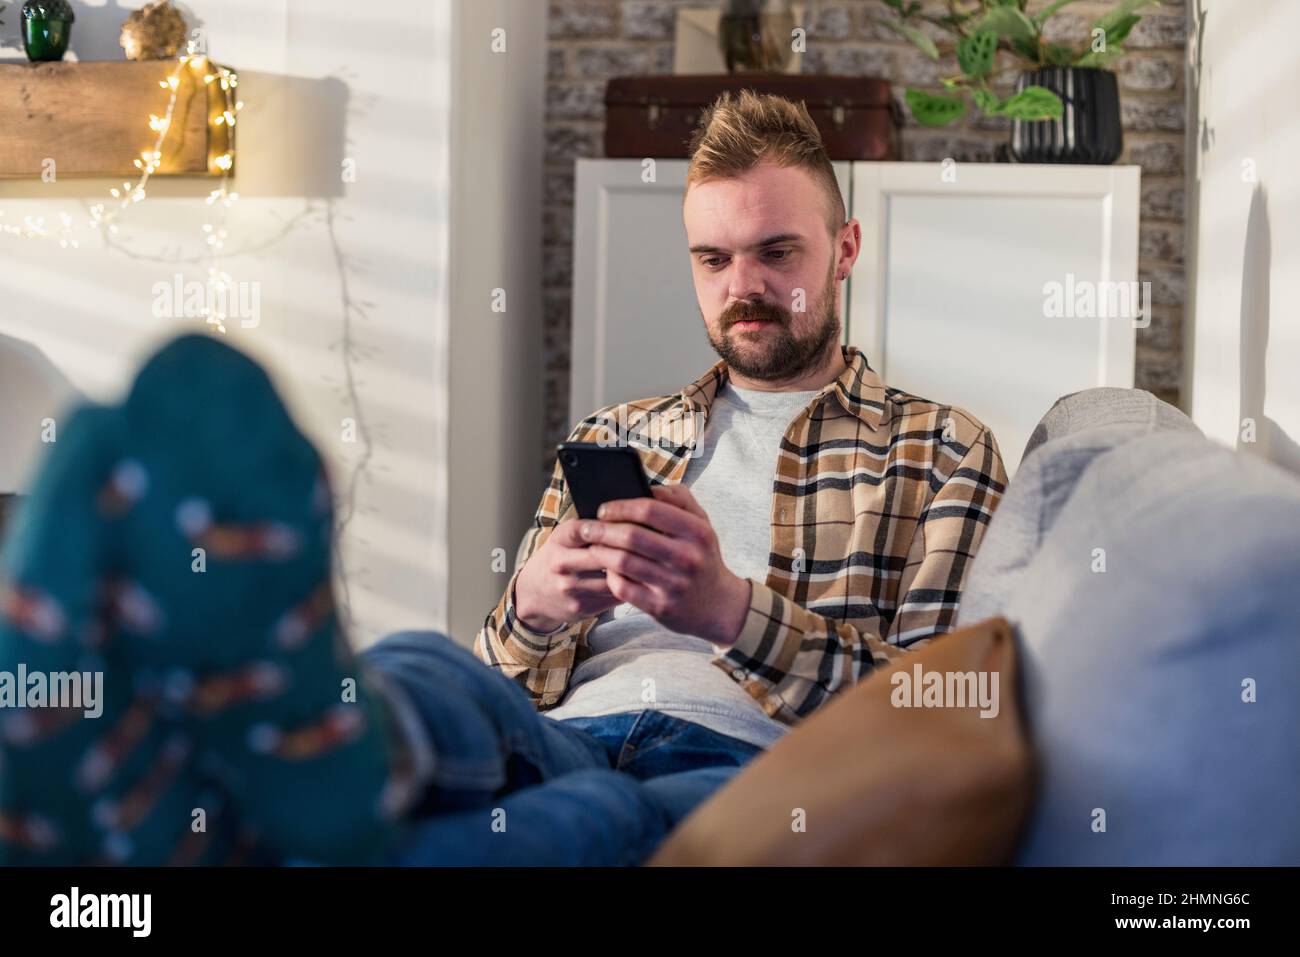 Uno scatto in vista frontale di un giovane uomo sdraiato sul divano nel suo soggiorno rilassante, sta usando il suo smartphone. Foto Stock